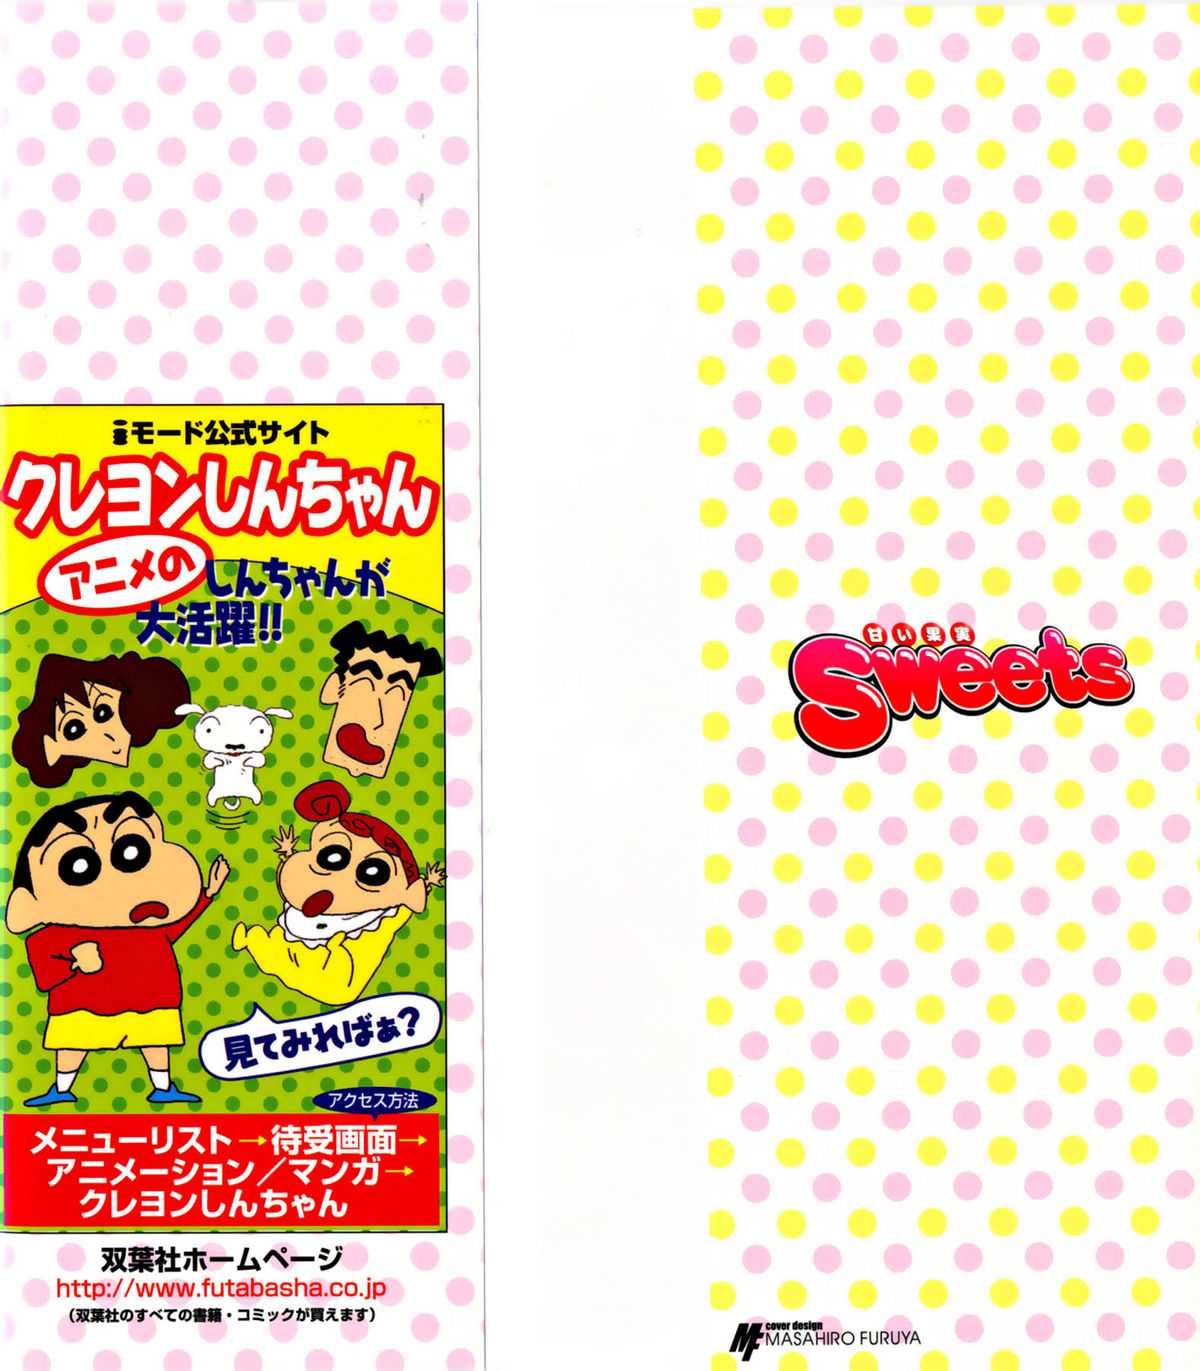 [HIDEMARU] Sweets - Amai Kajitsu 1 [英丸] Sweets - 甘い果実 01